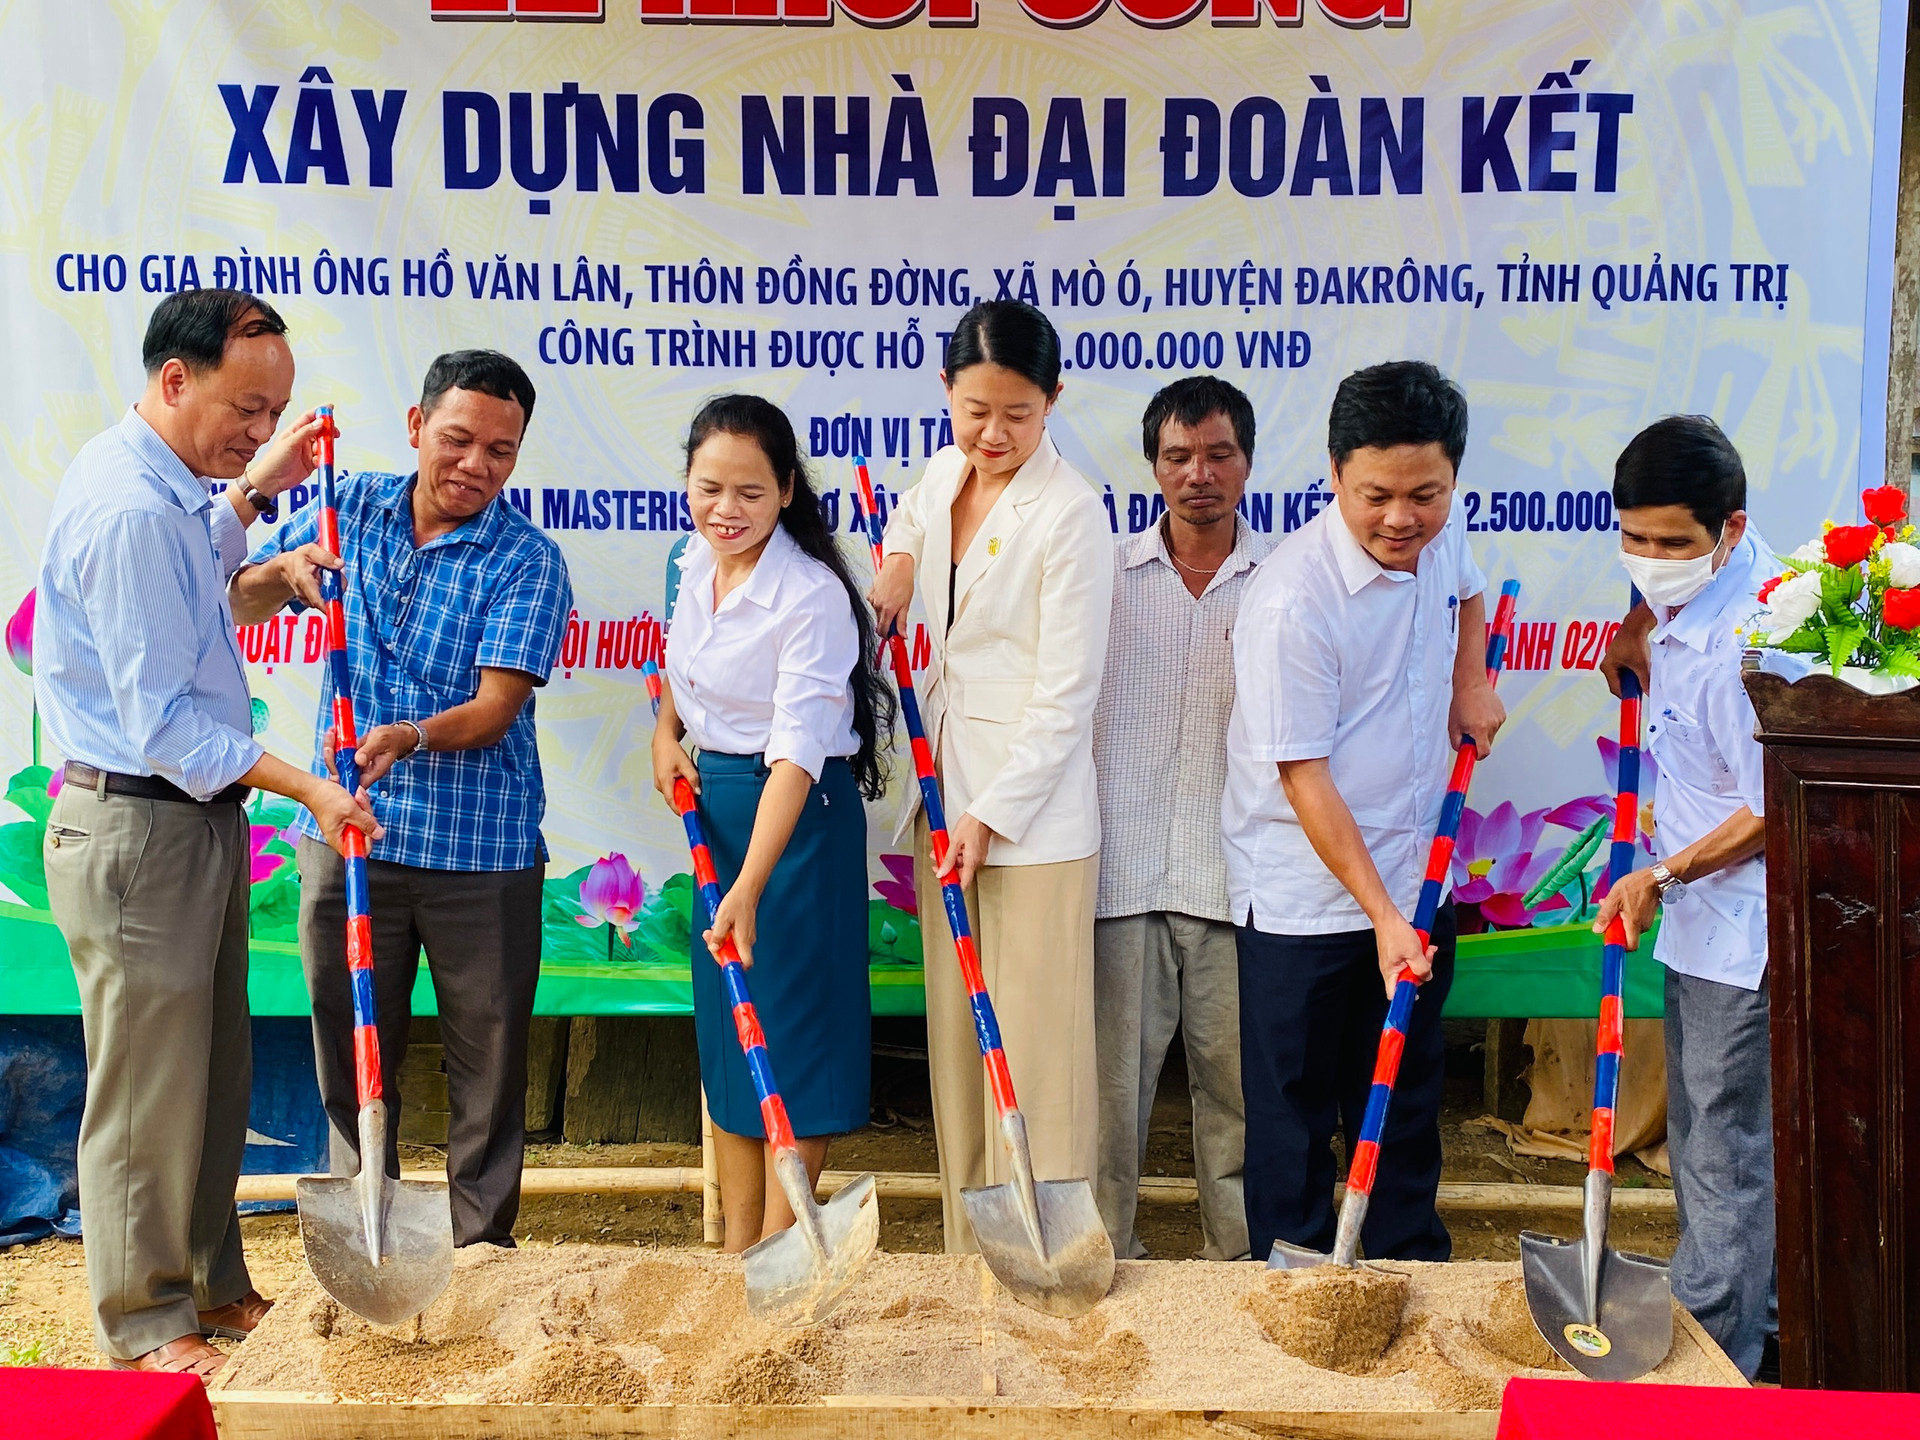 Khởi công xây dựng nhà Đại đoàn kết cho gia đình ông Hồ Văn Lân.